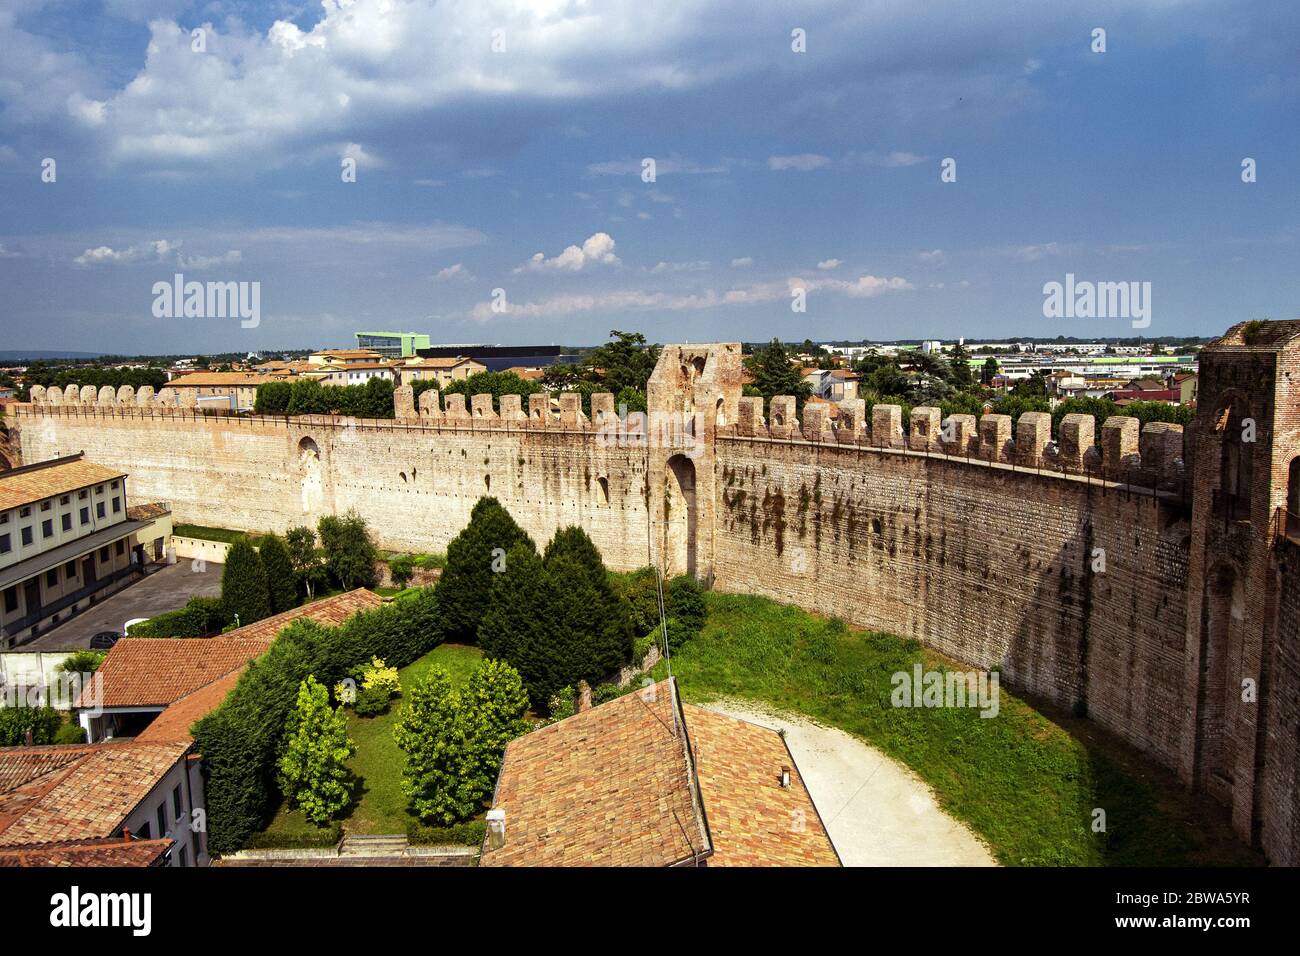 Les murs fortifiés de la ville historique de Cittadella, Italie. Concept de protection des frontières Banque D'Images